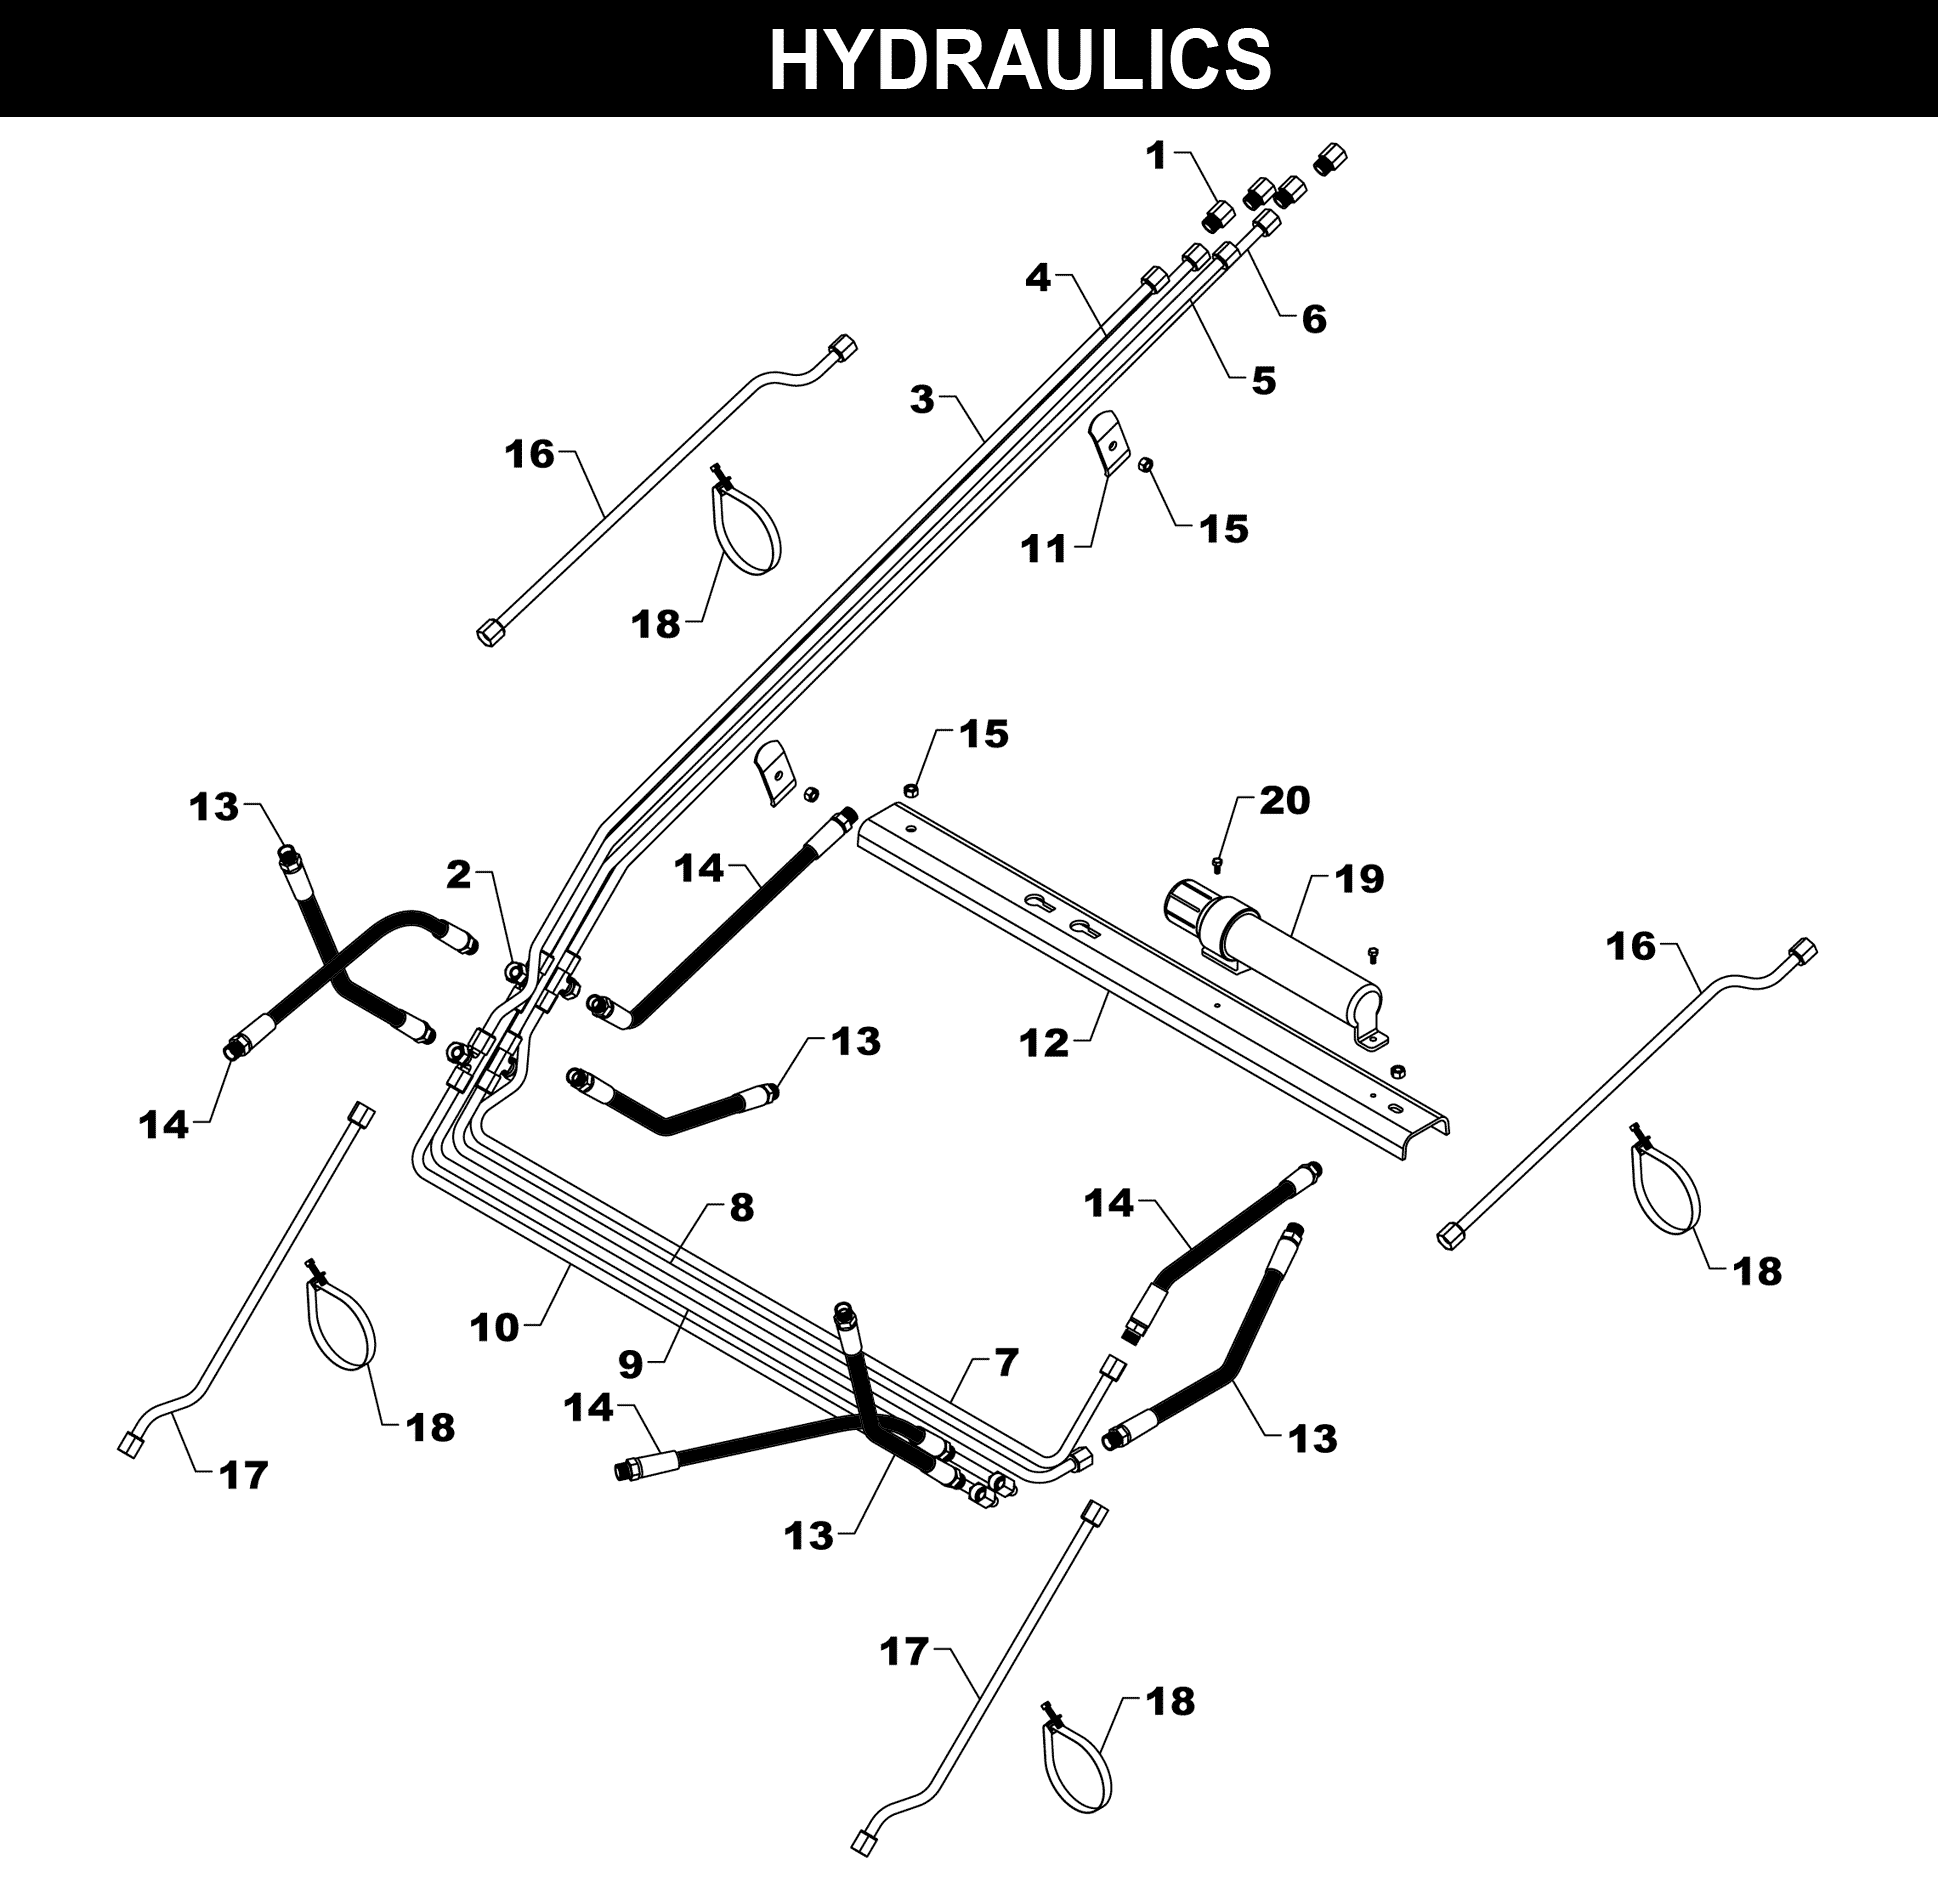 TA-45 HYDRAULICS